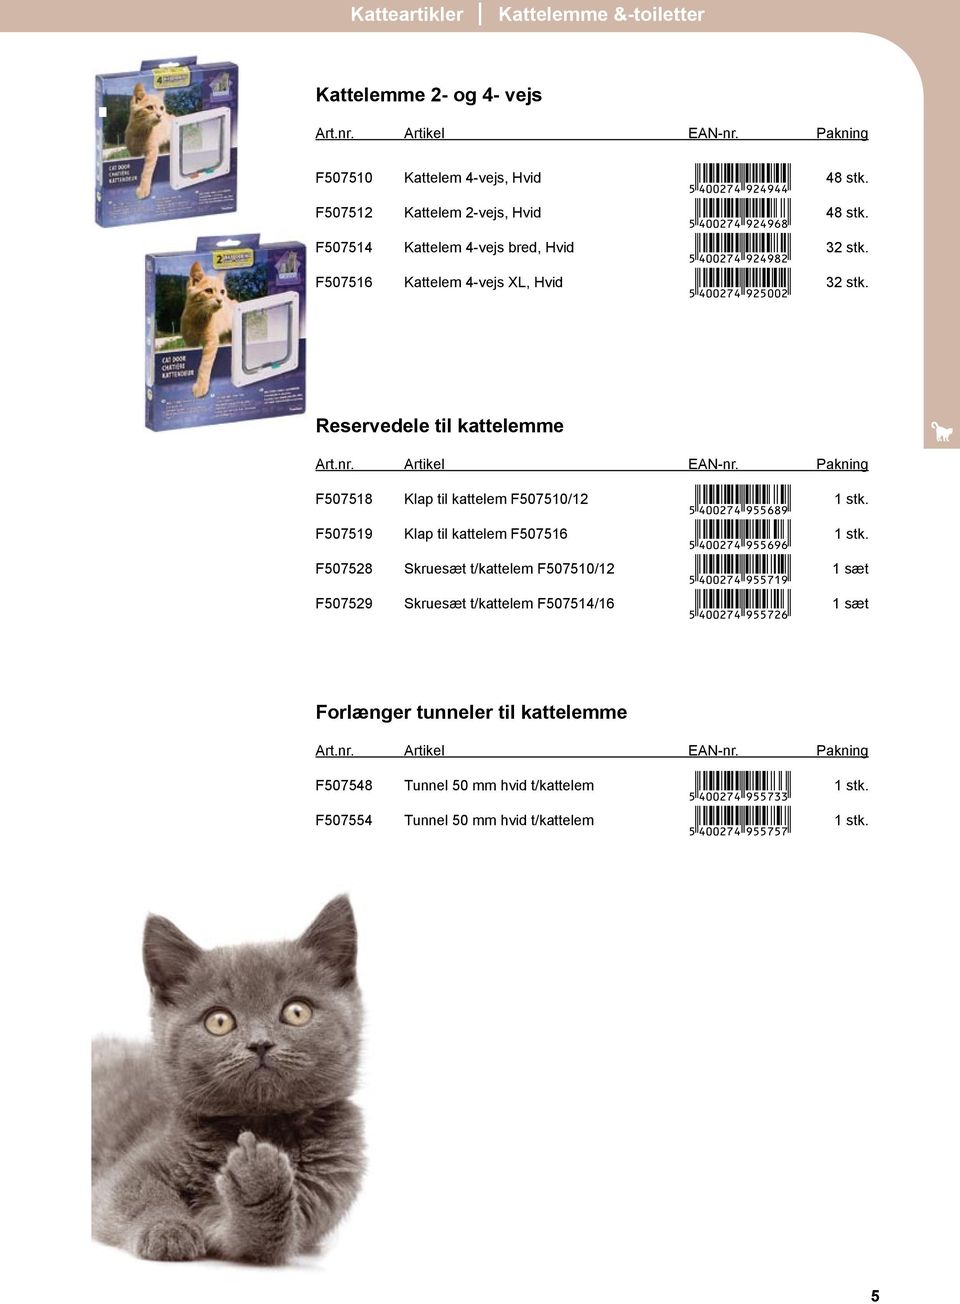 Reservedele til kattelemme F507518 Klap til kattelem F507510/12 V(4aa27e-JFFGIJ( 1 stk. F507519 Klap til kattelem F507516 V(4aa27e-JFFGJG( 1 stk.